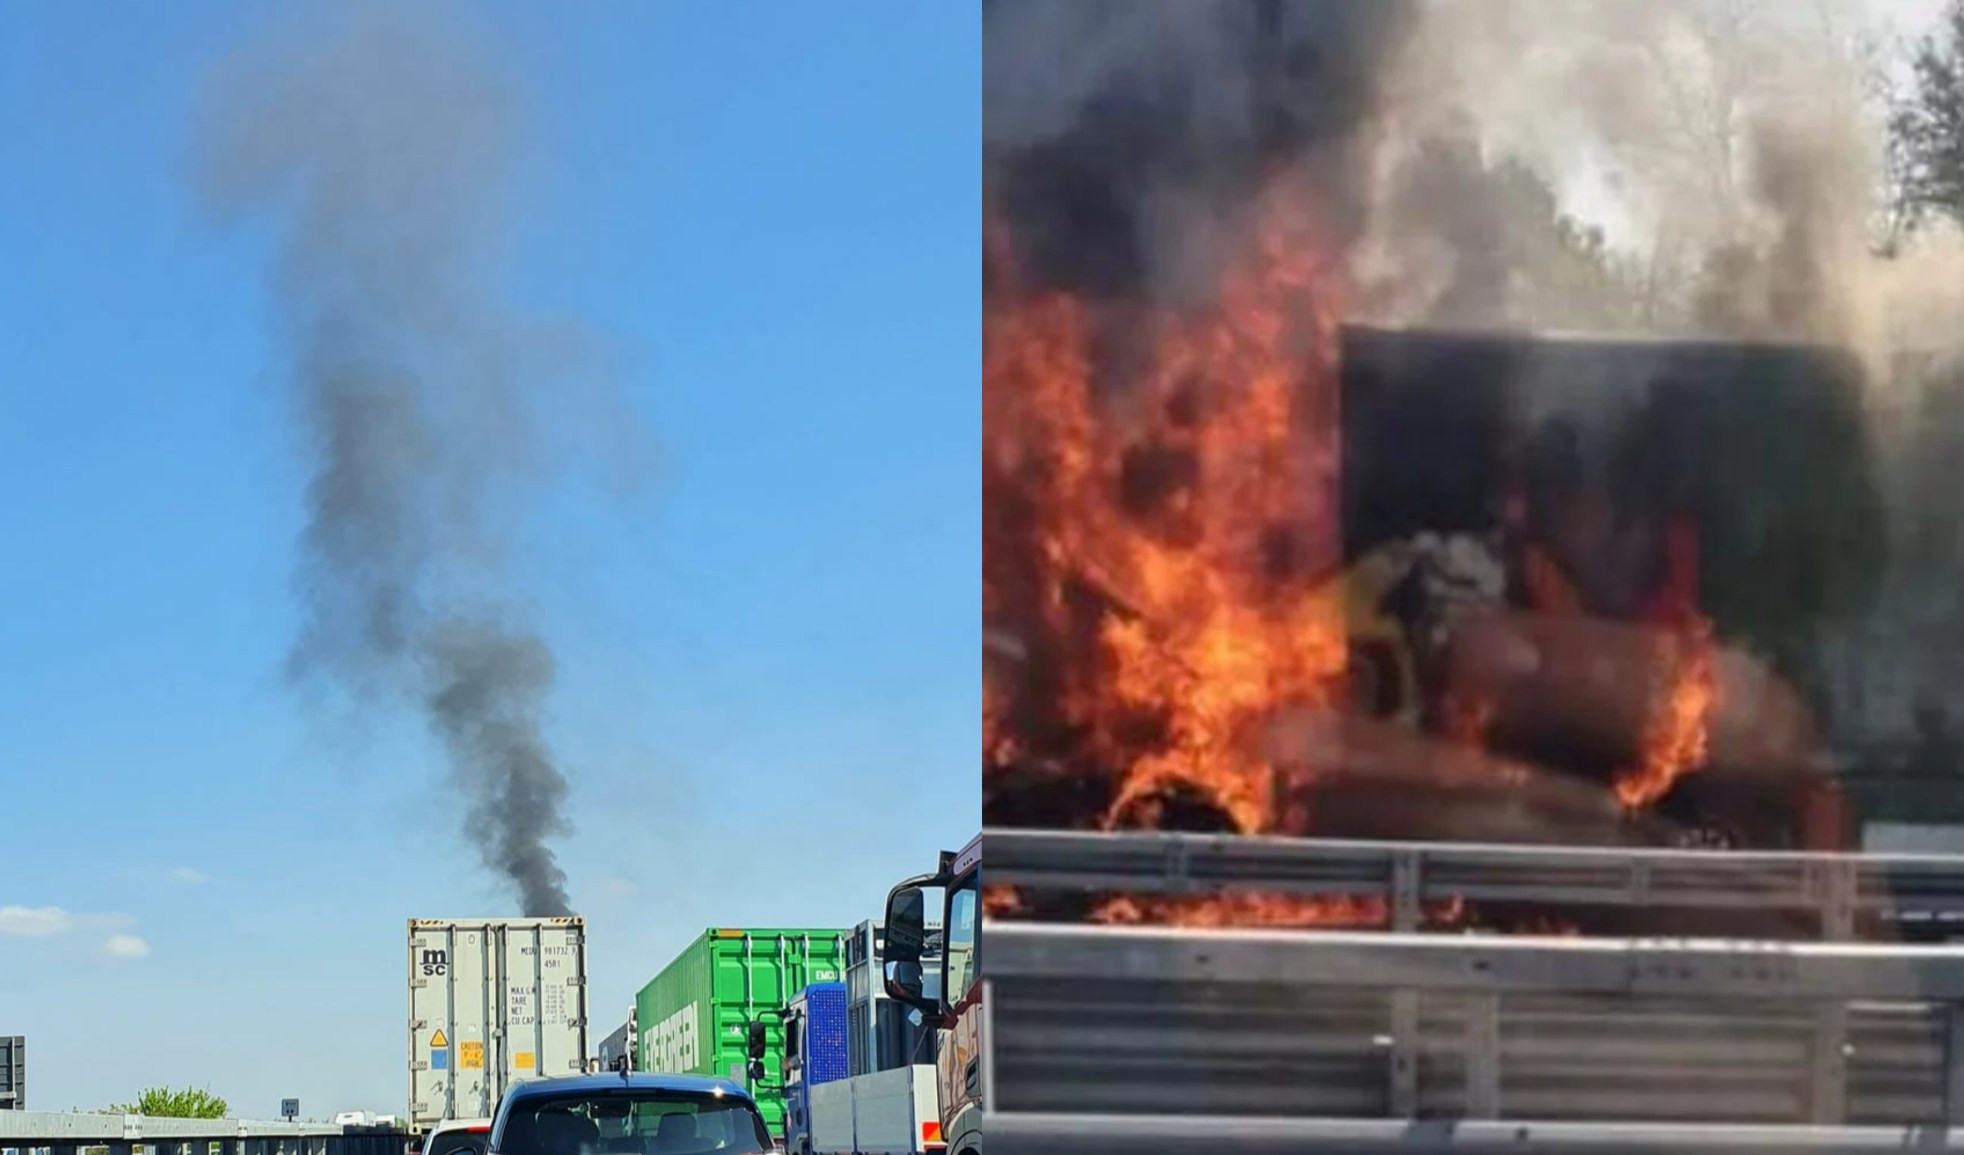 Tir in fiamme sull'A7 a Tortona, muore camionista: era genovese